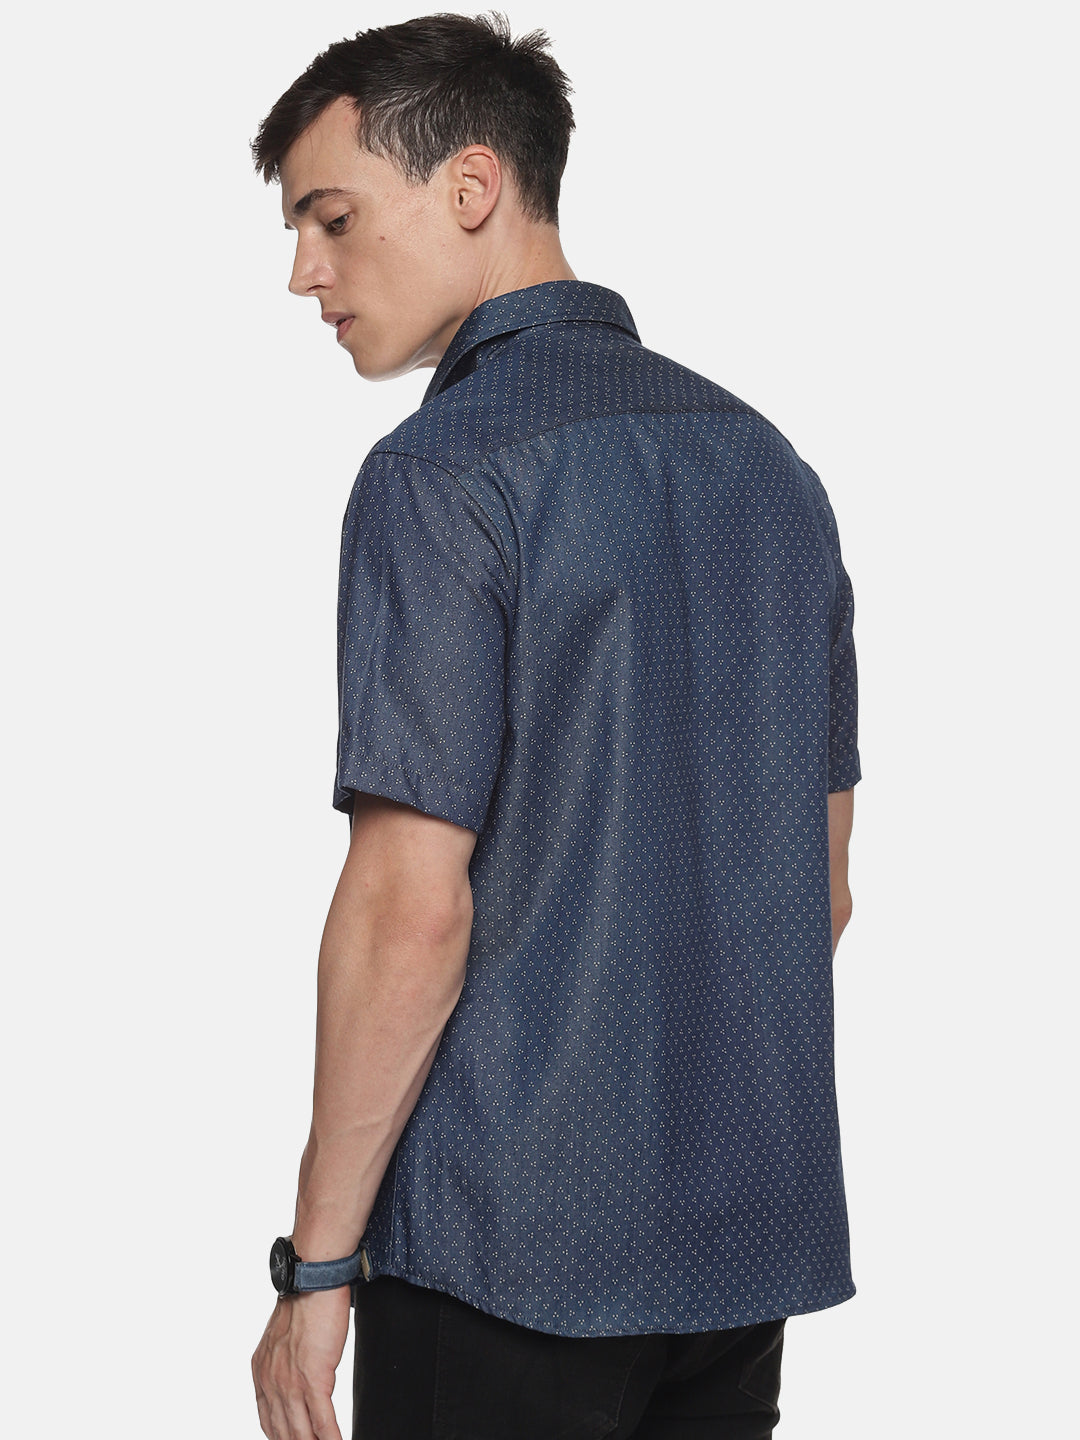 Men Navy Blue Printed Slim Fit Half Sleeve Casual Shirt